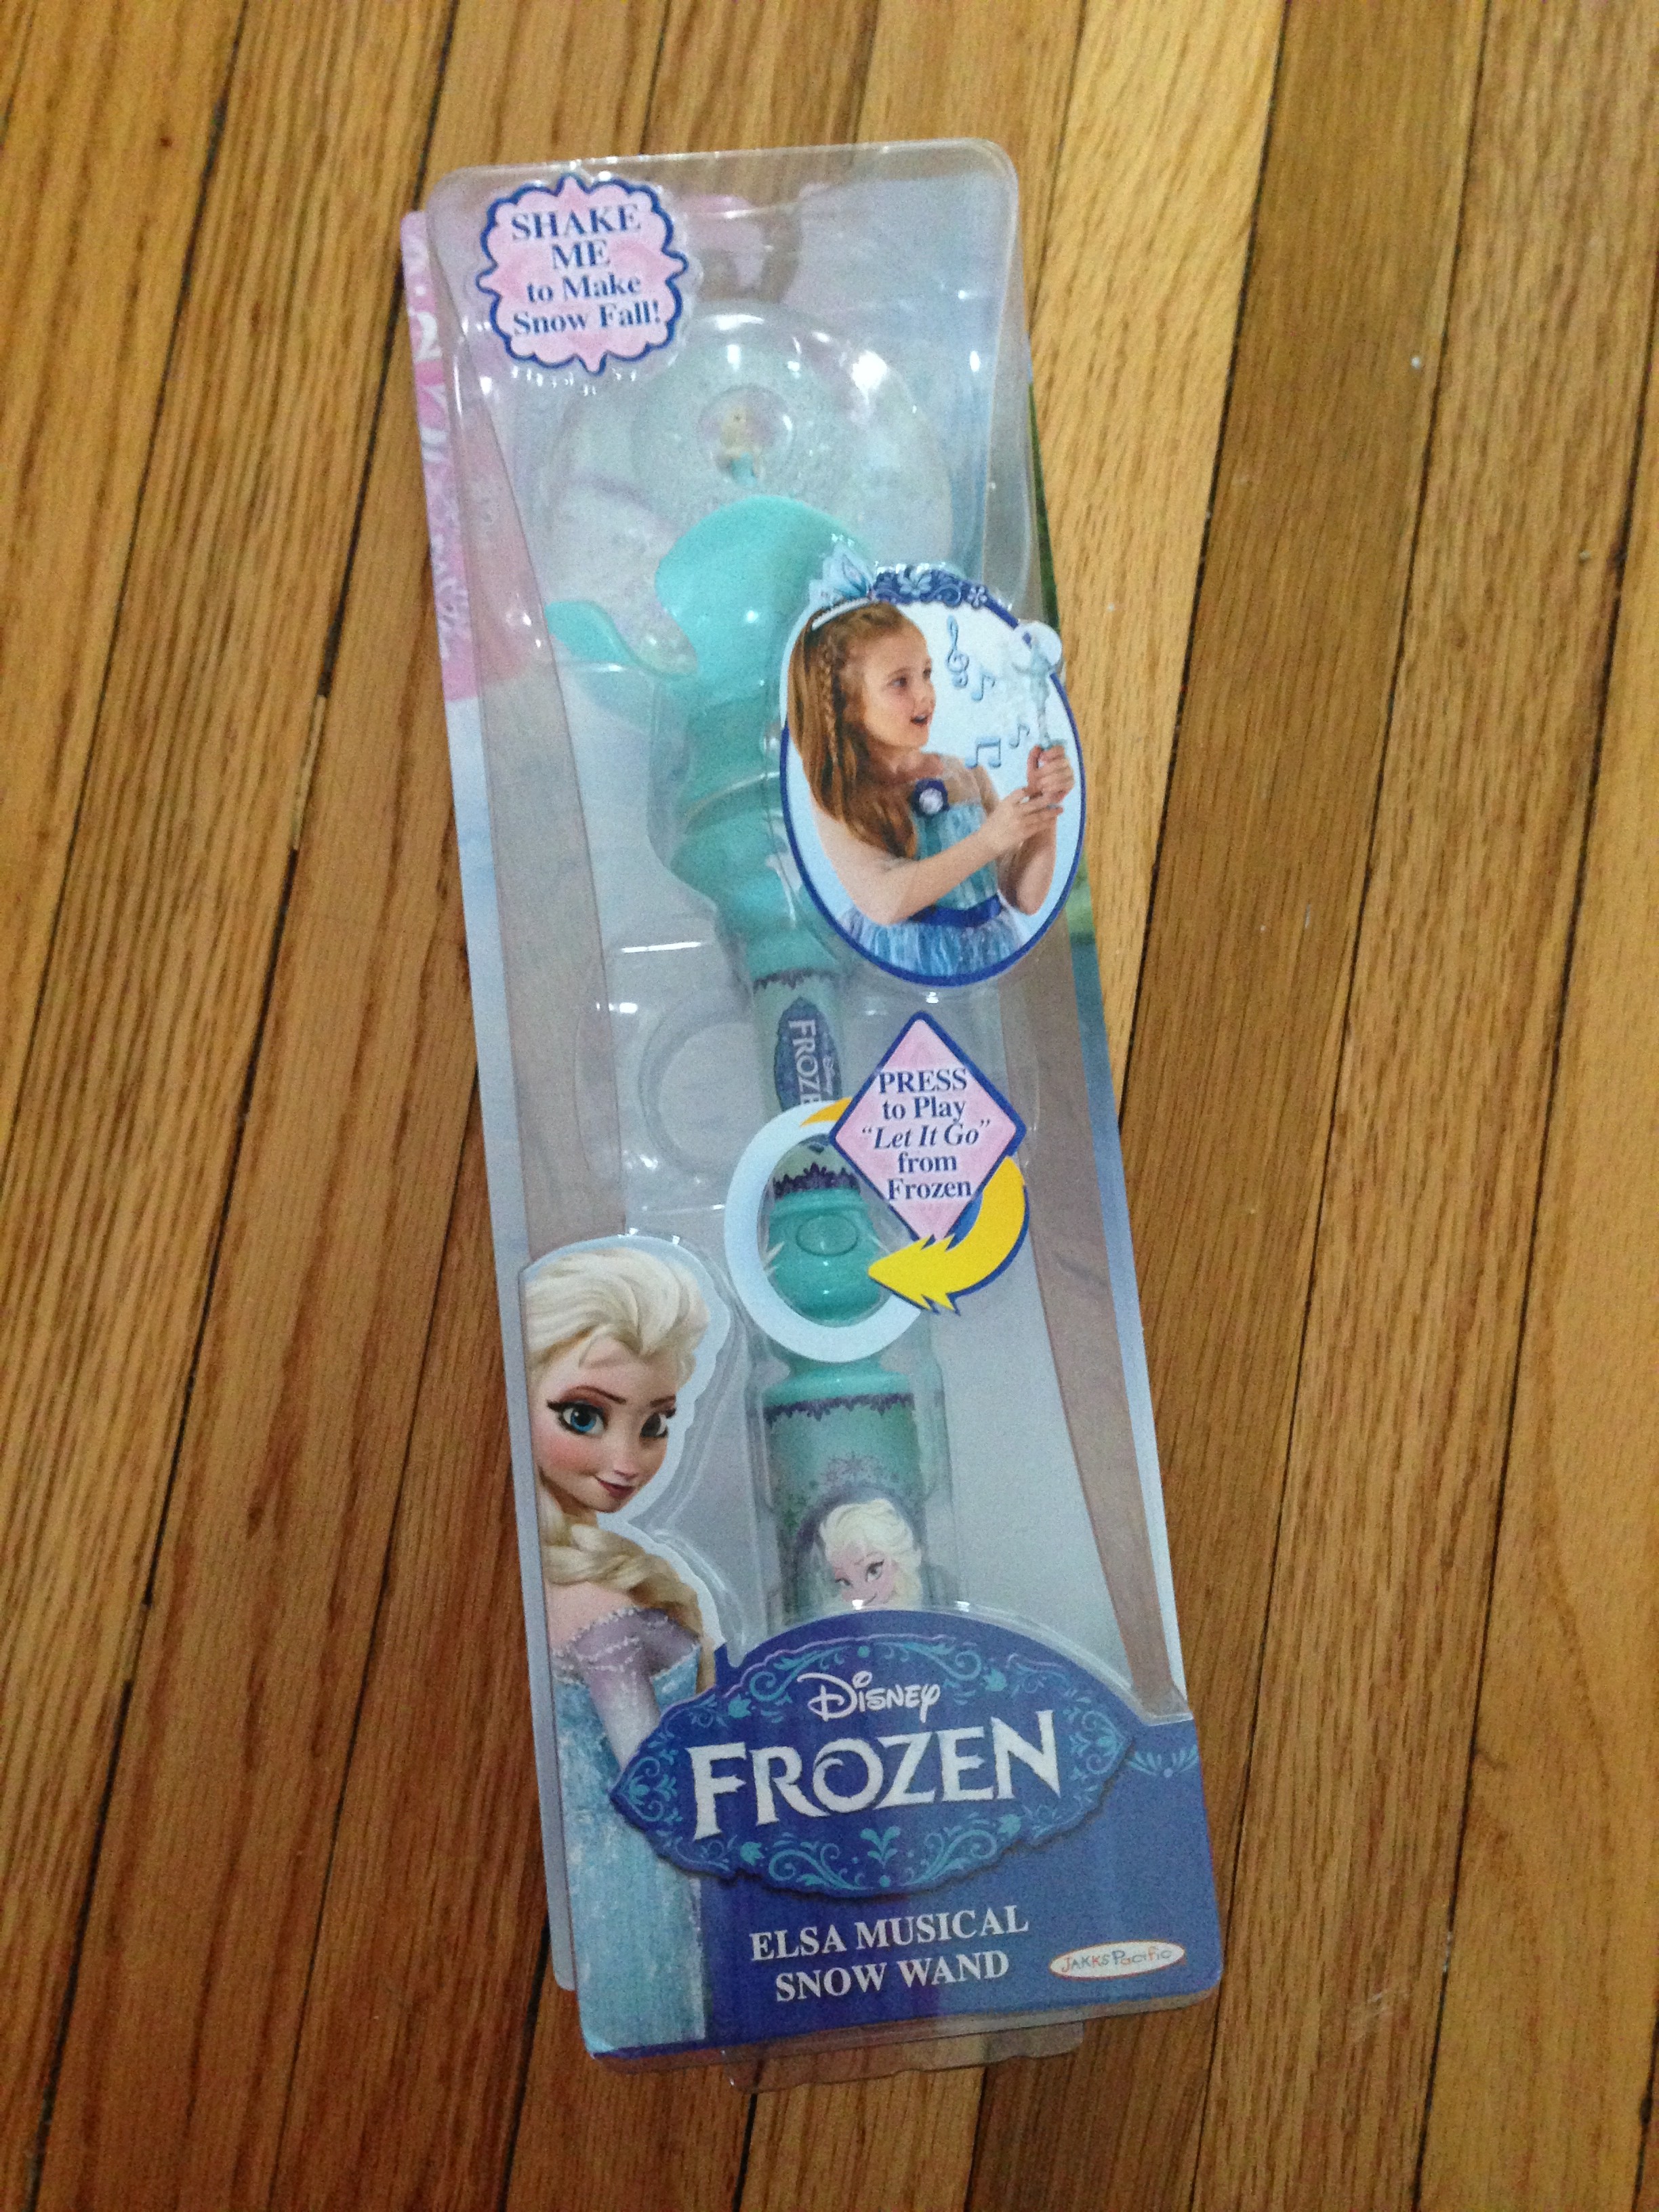 https://www.sippycupmom.com/wp-content/uploads/2014/05/Jakks-Pacific-Frozen-Elsa-Wand-e1399052503503.jpg